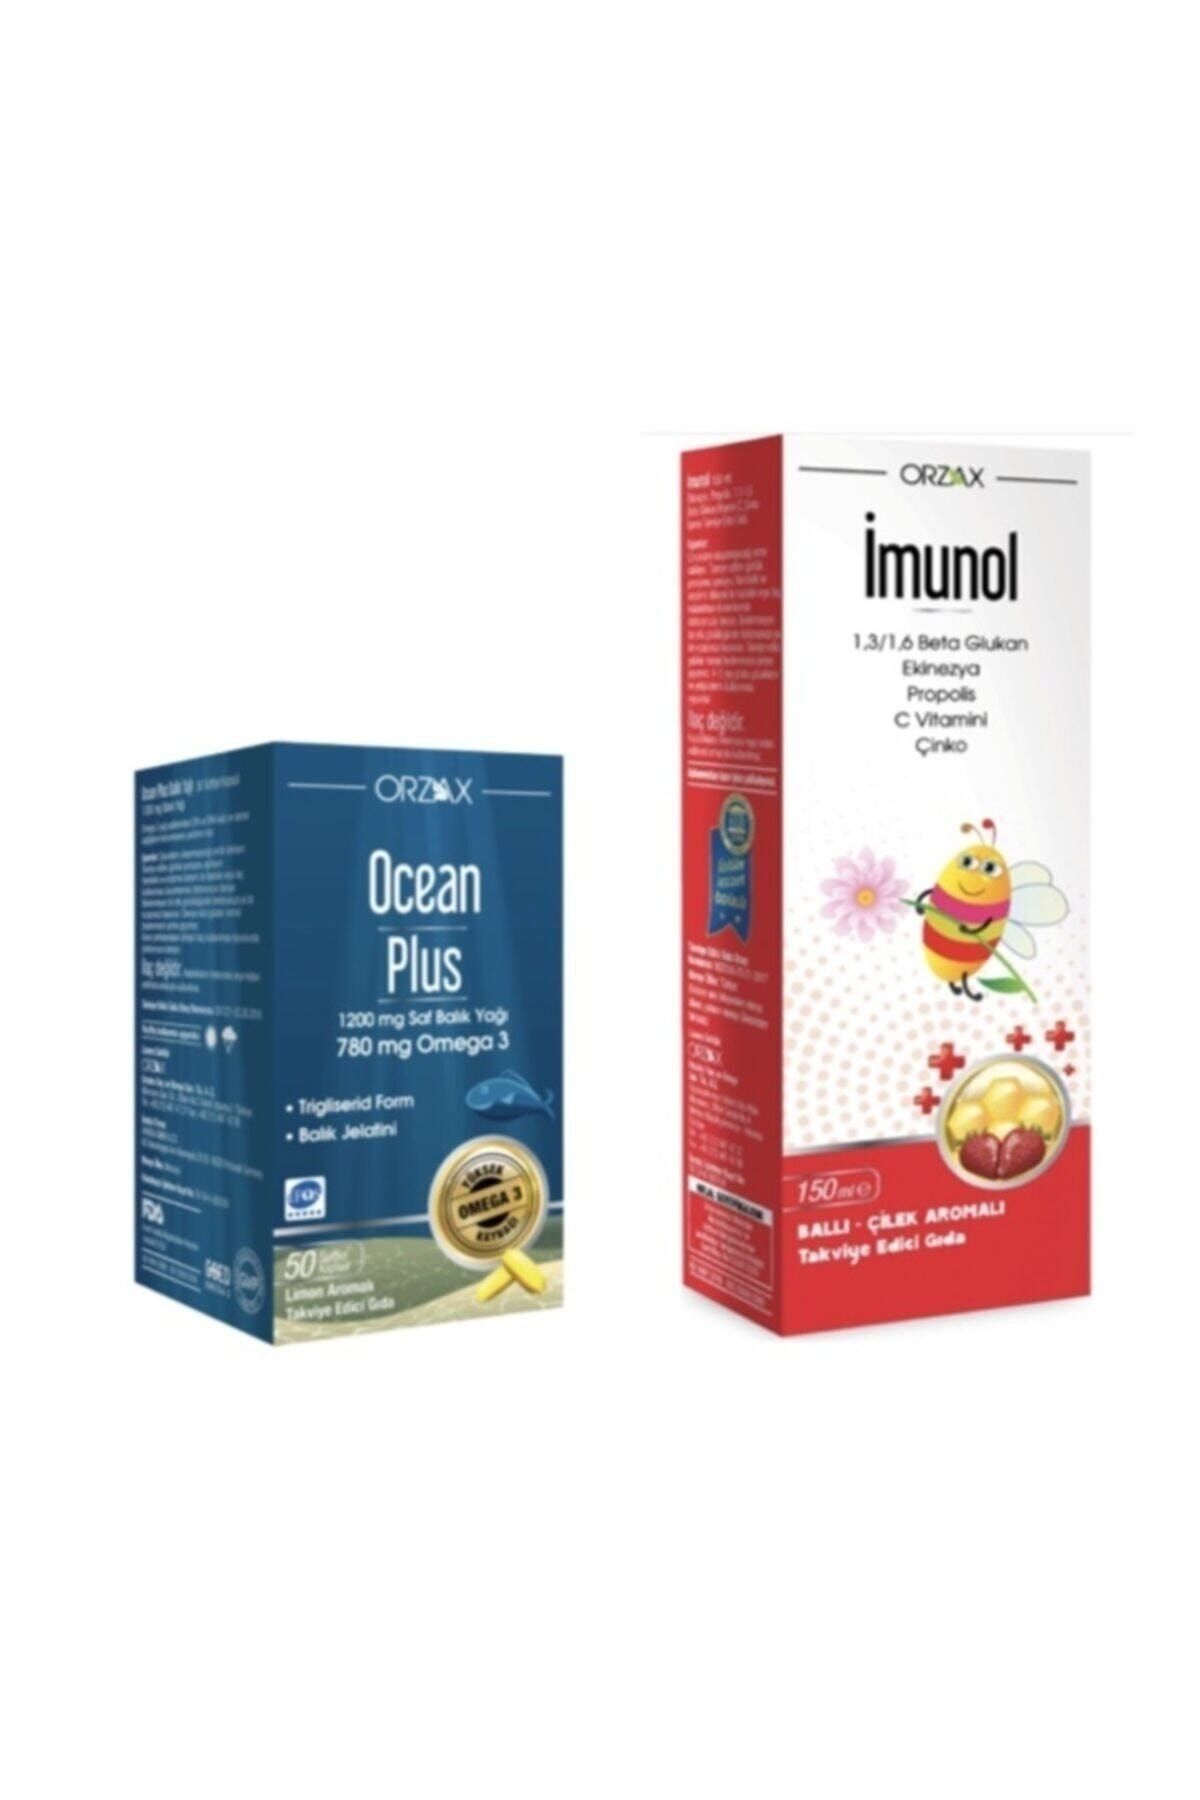 İMUNOL Ocean Plus Omega 3 1200 mg 50 Kapsül Limon + Imunol Şurup 150 ml